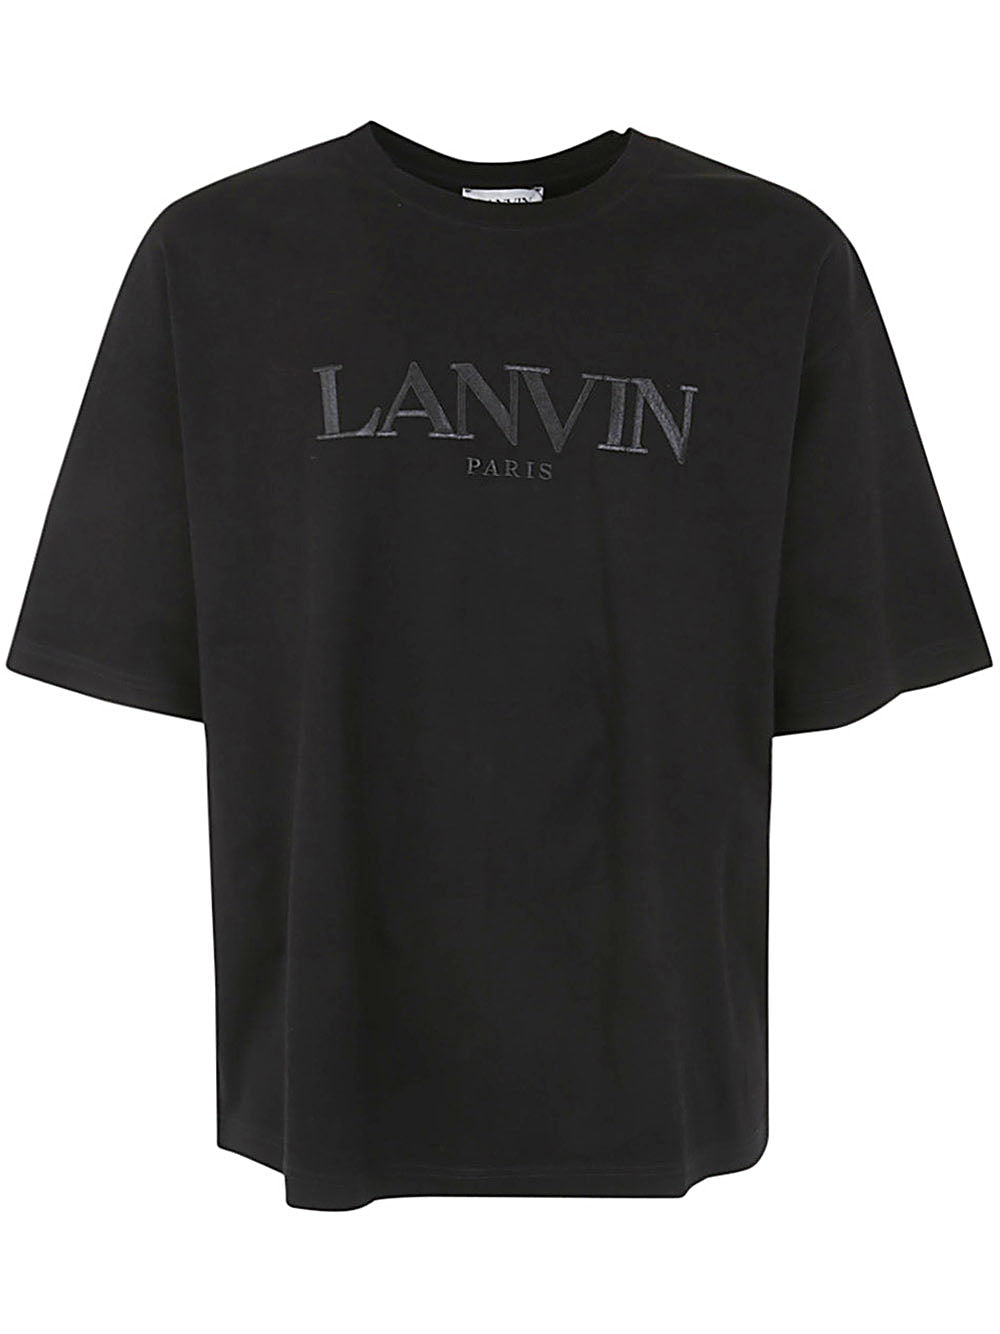 Lanvin Paris Oversized T-shirt